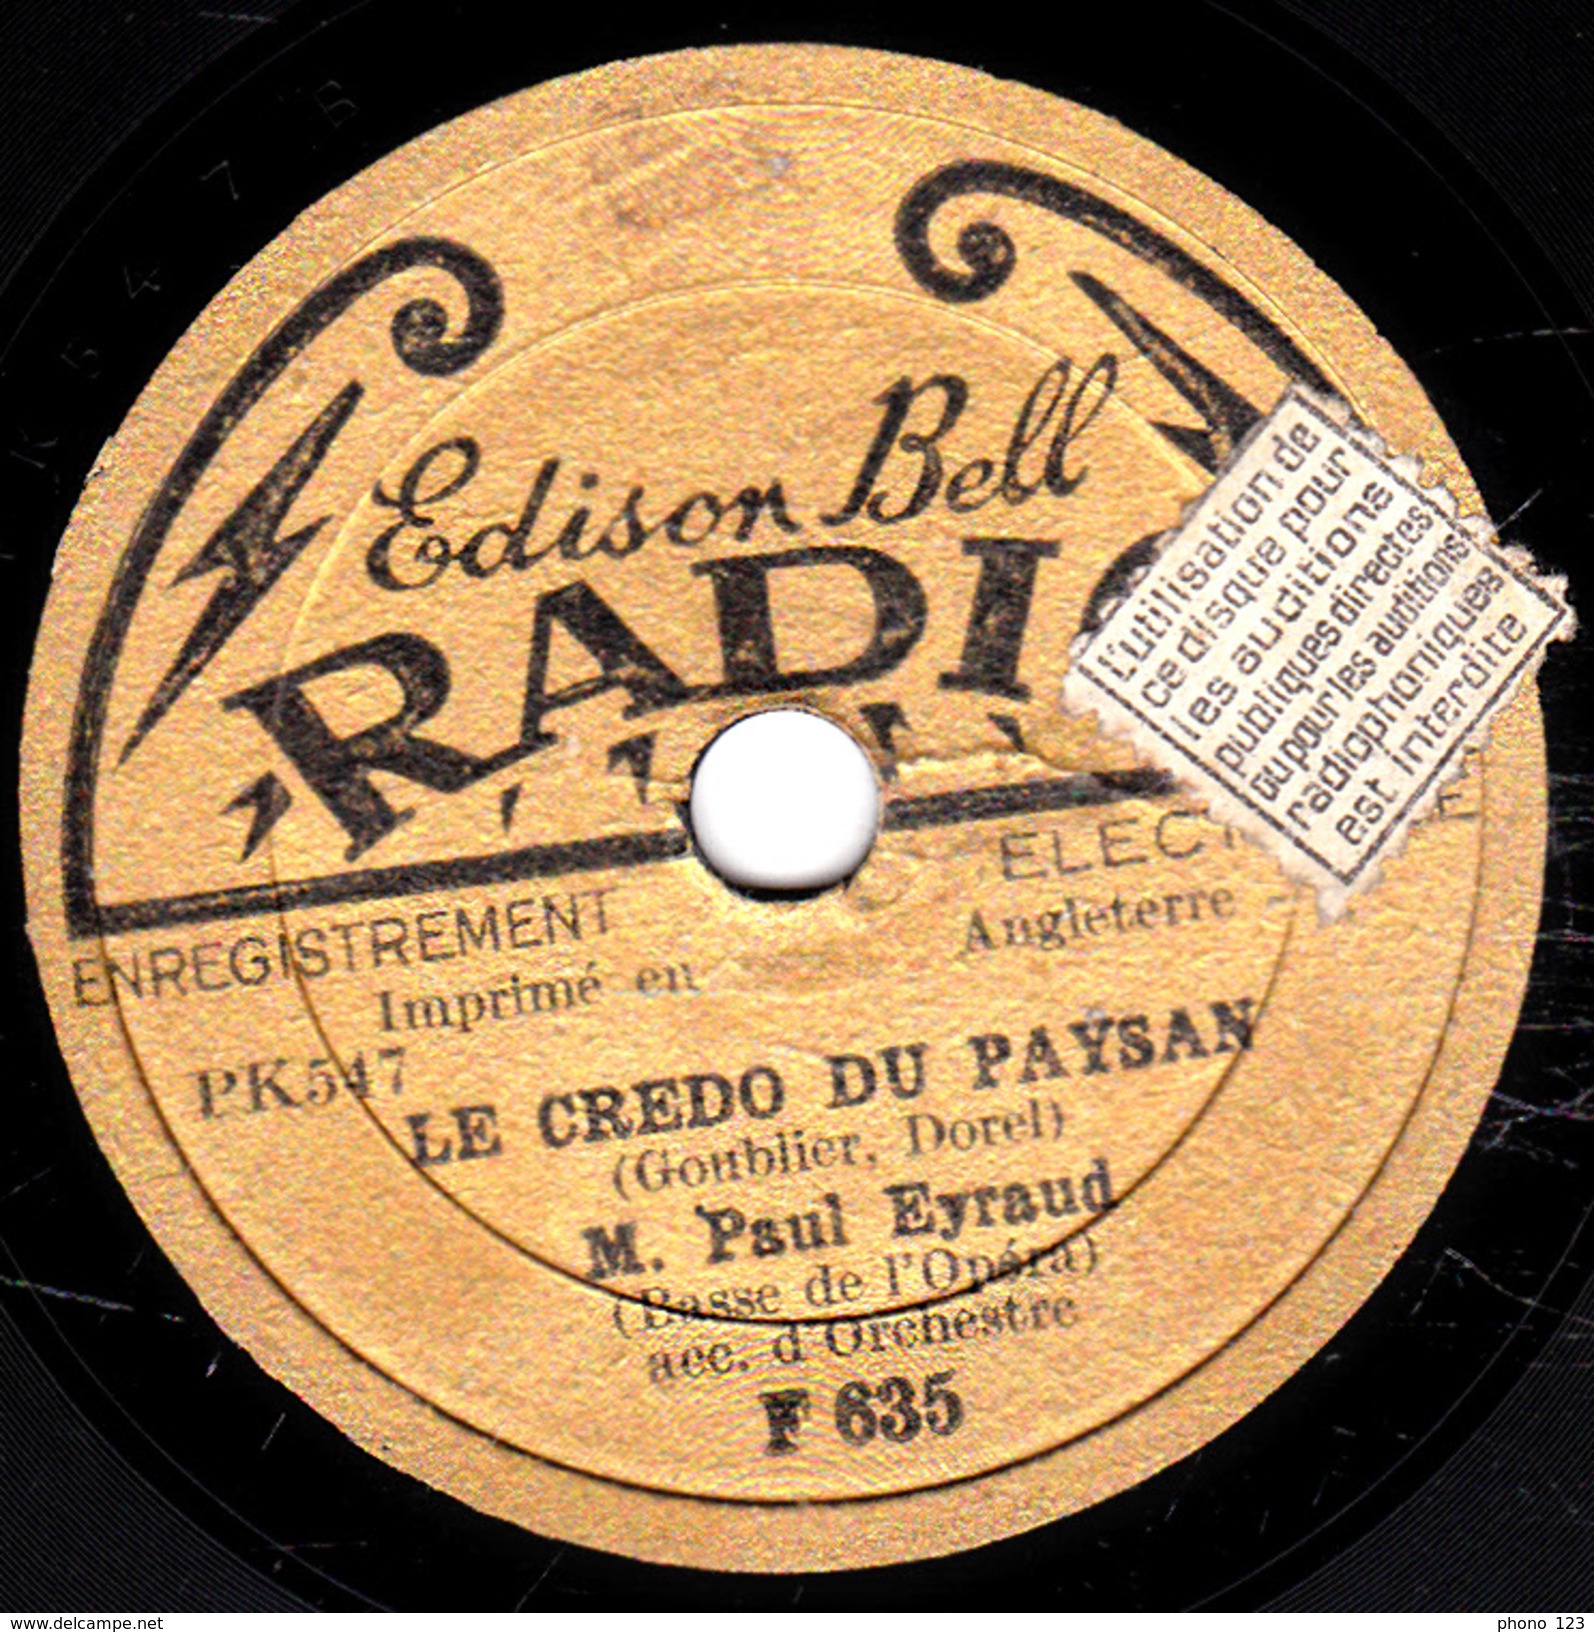 78 T. -  20 Cm - état Tb - PAUL EYRAUD -  SI VOUS NE M'AIMEZ PLUS - LE CREDOT DU PAYSAN - 78 T - Disques Pour Gramophone